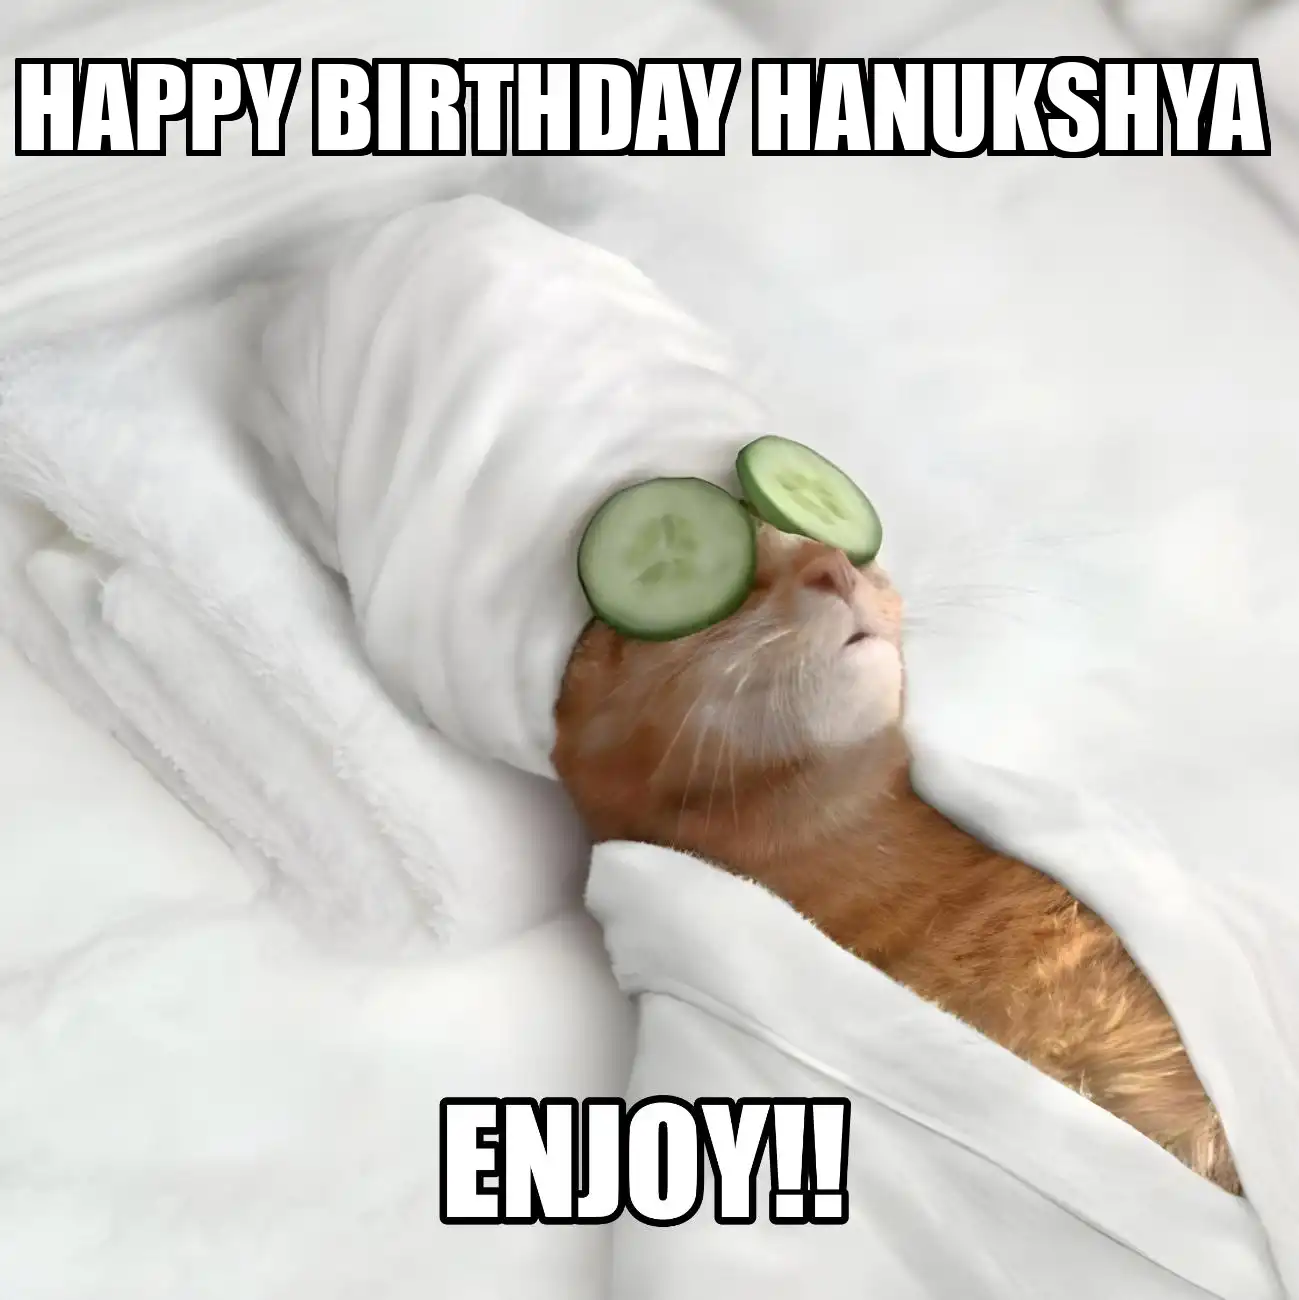 Happy Birthday Hanukshya Enjoy Cat Meme